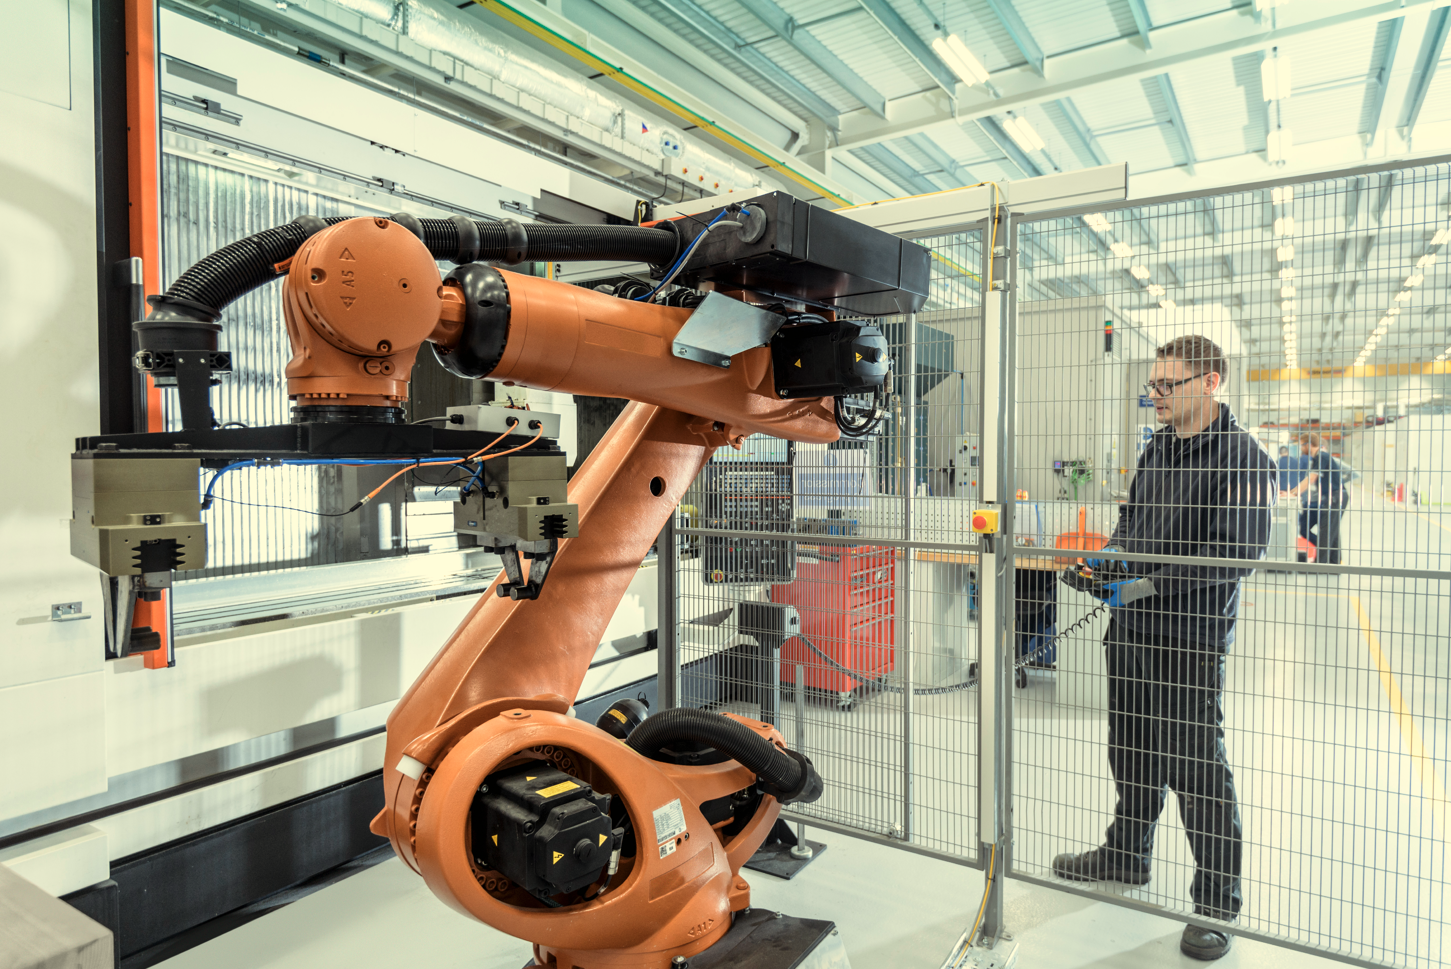 Industrie Roboter & Cobots bieten viele Einsatzmöglichkeiten in der Industrie